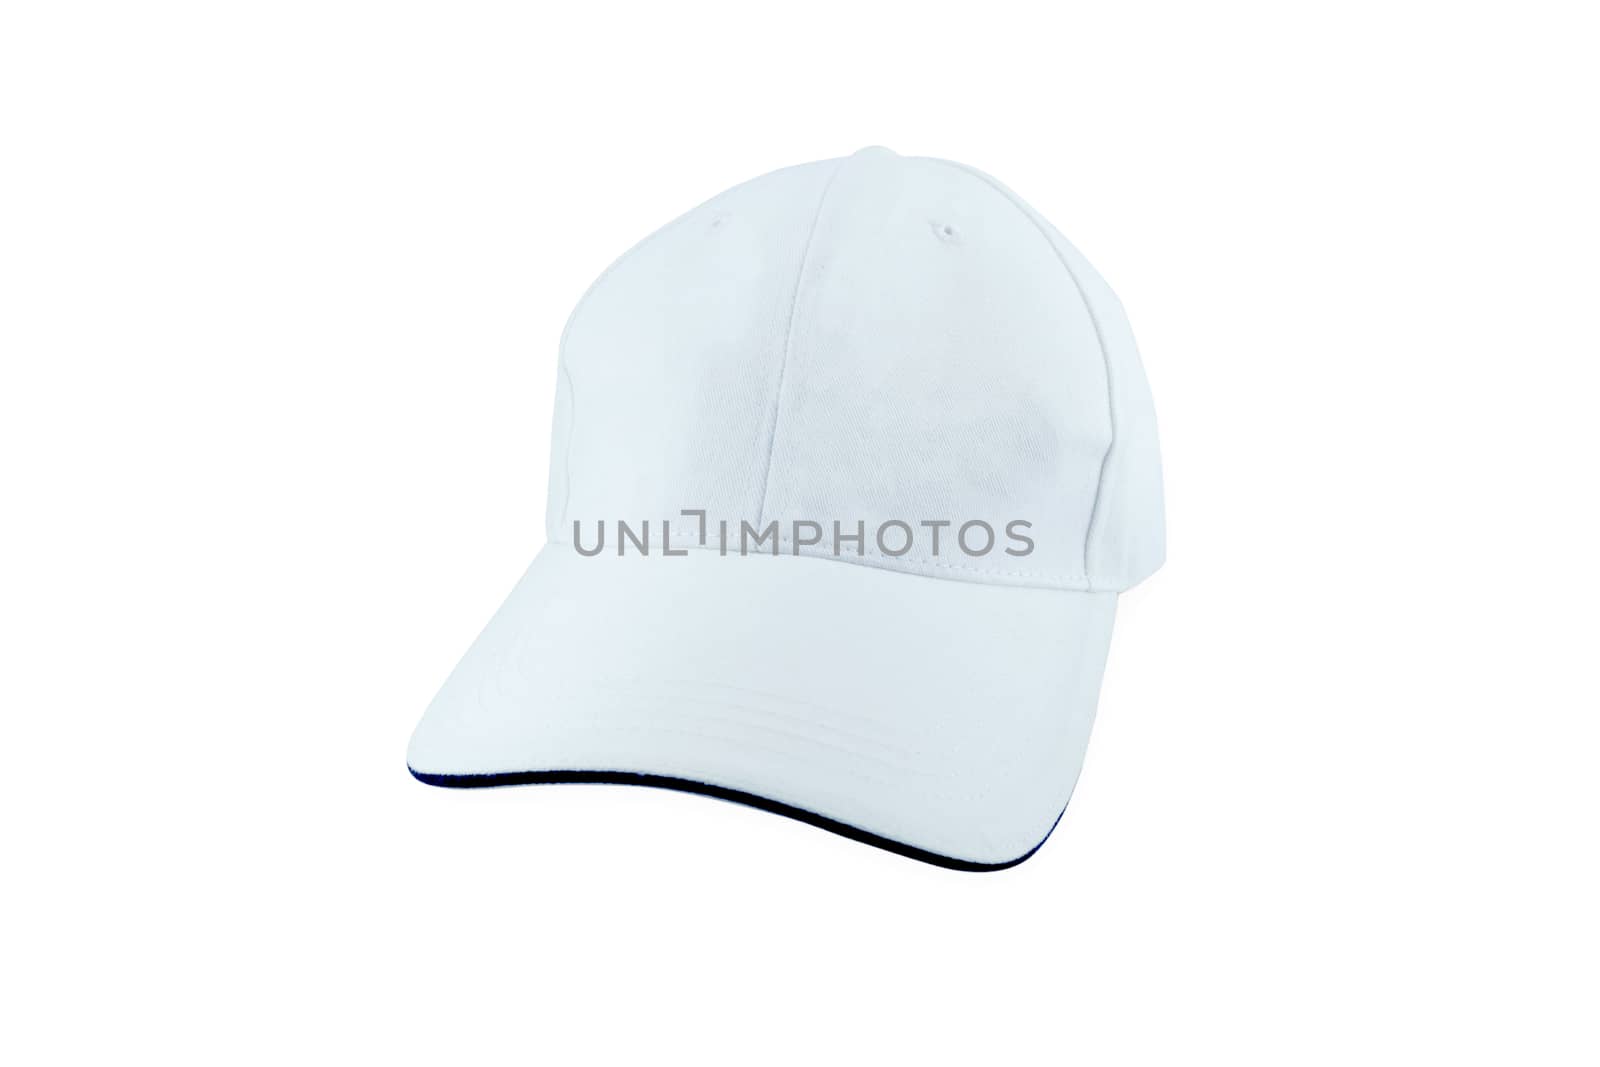 White Baseball Hat Isolated on White Background.